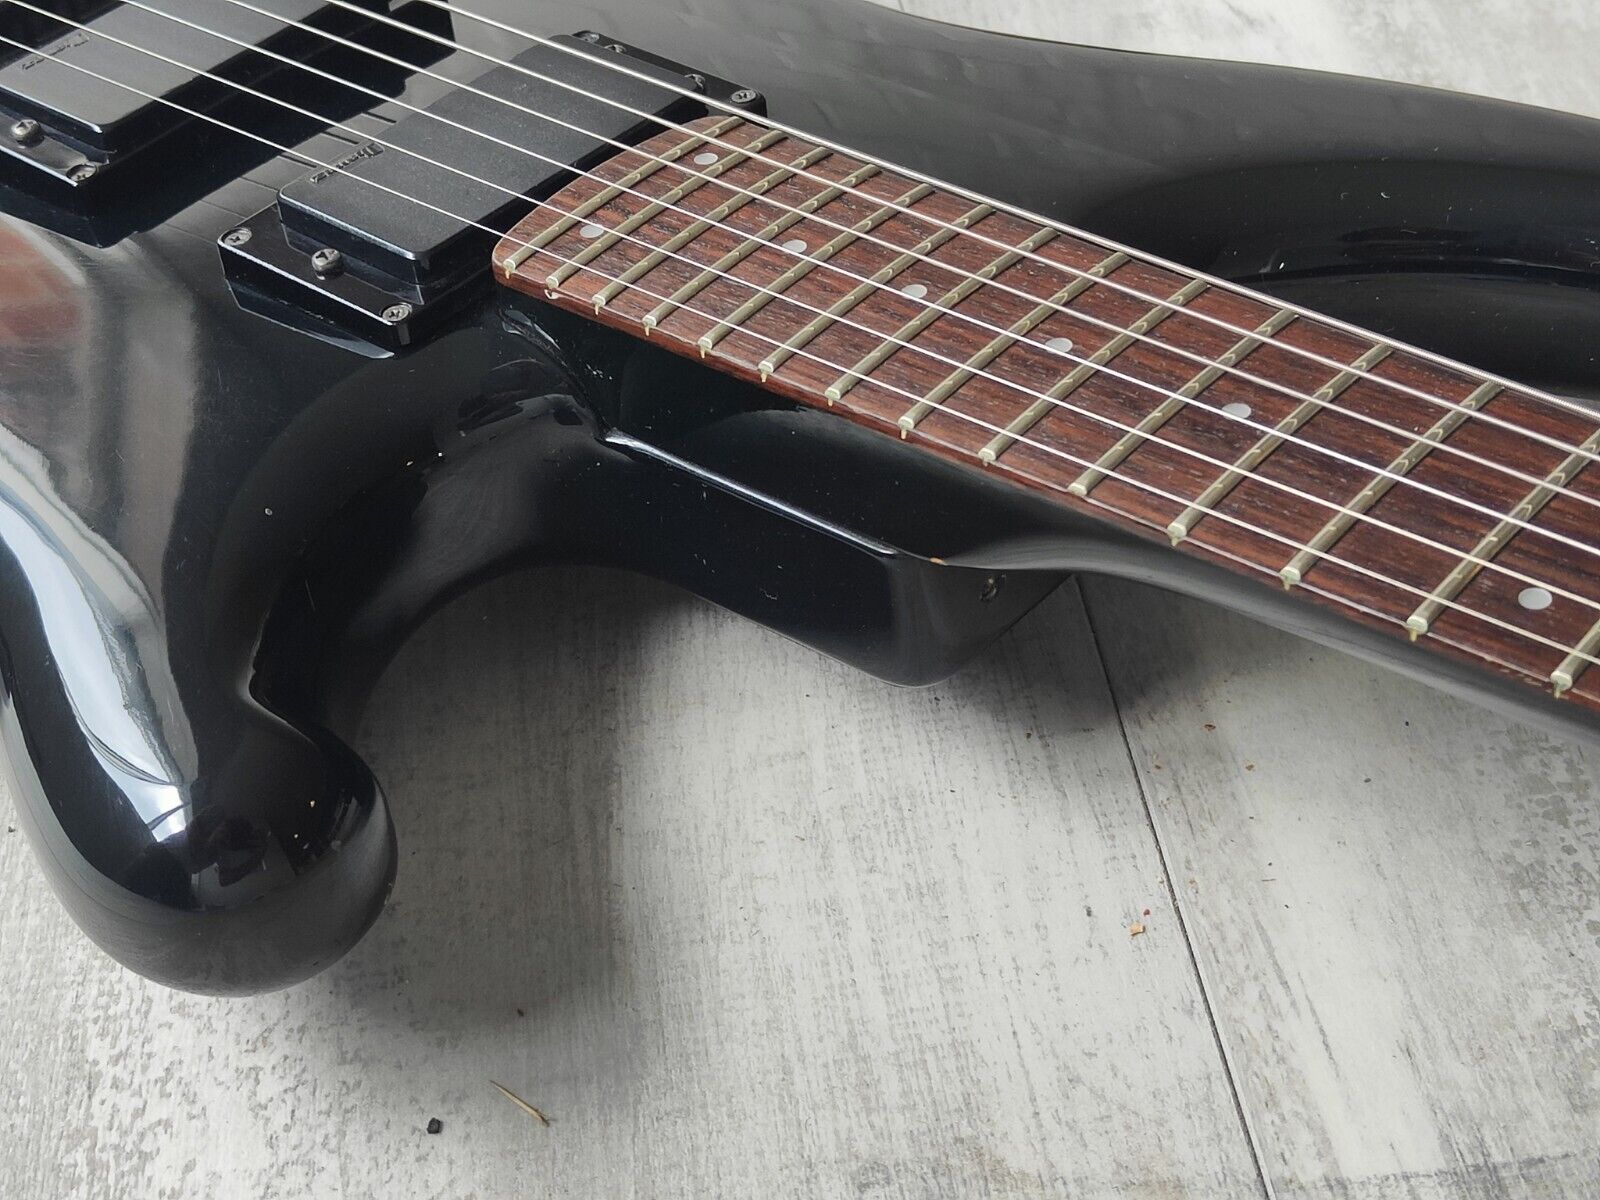 1985 Ibanez Japan RS525 Roadstar II Vintage Electric Guitar (Black)